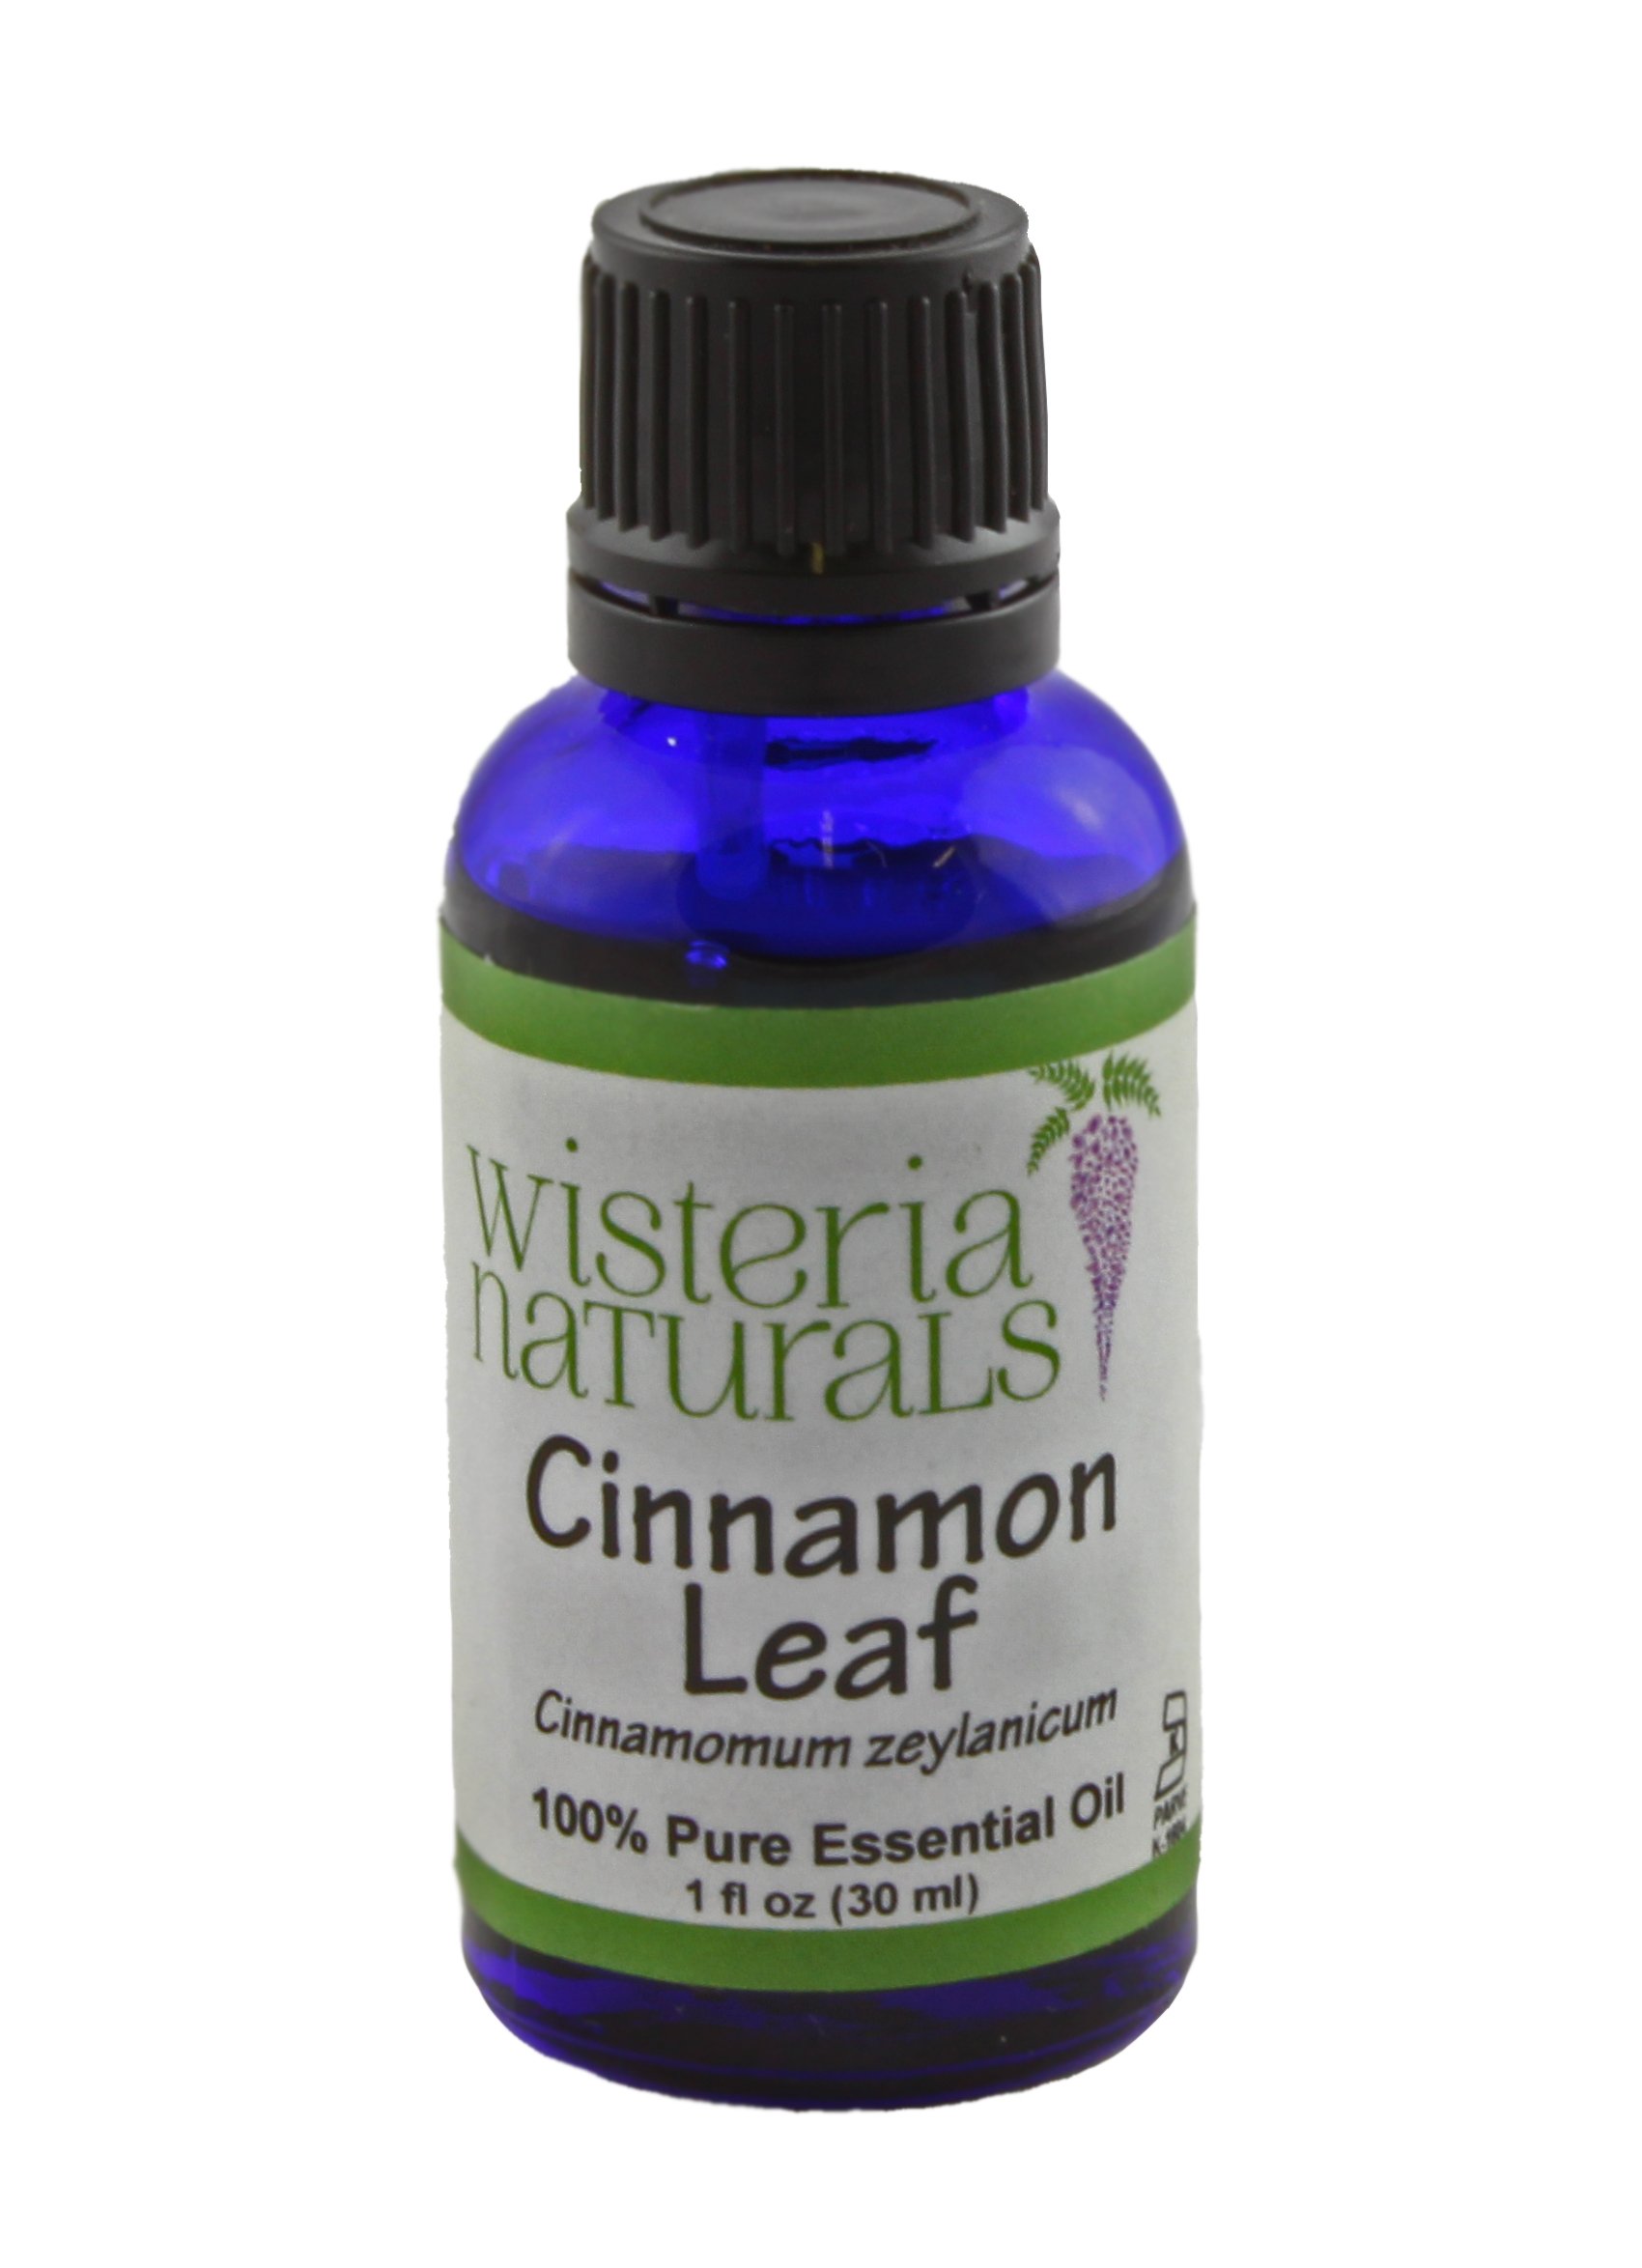 Cinnamon Leaf Essential Oil – Alywillow